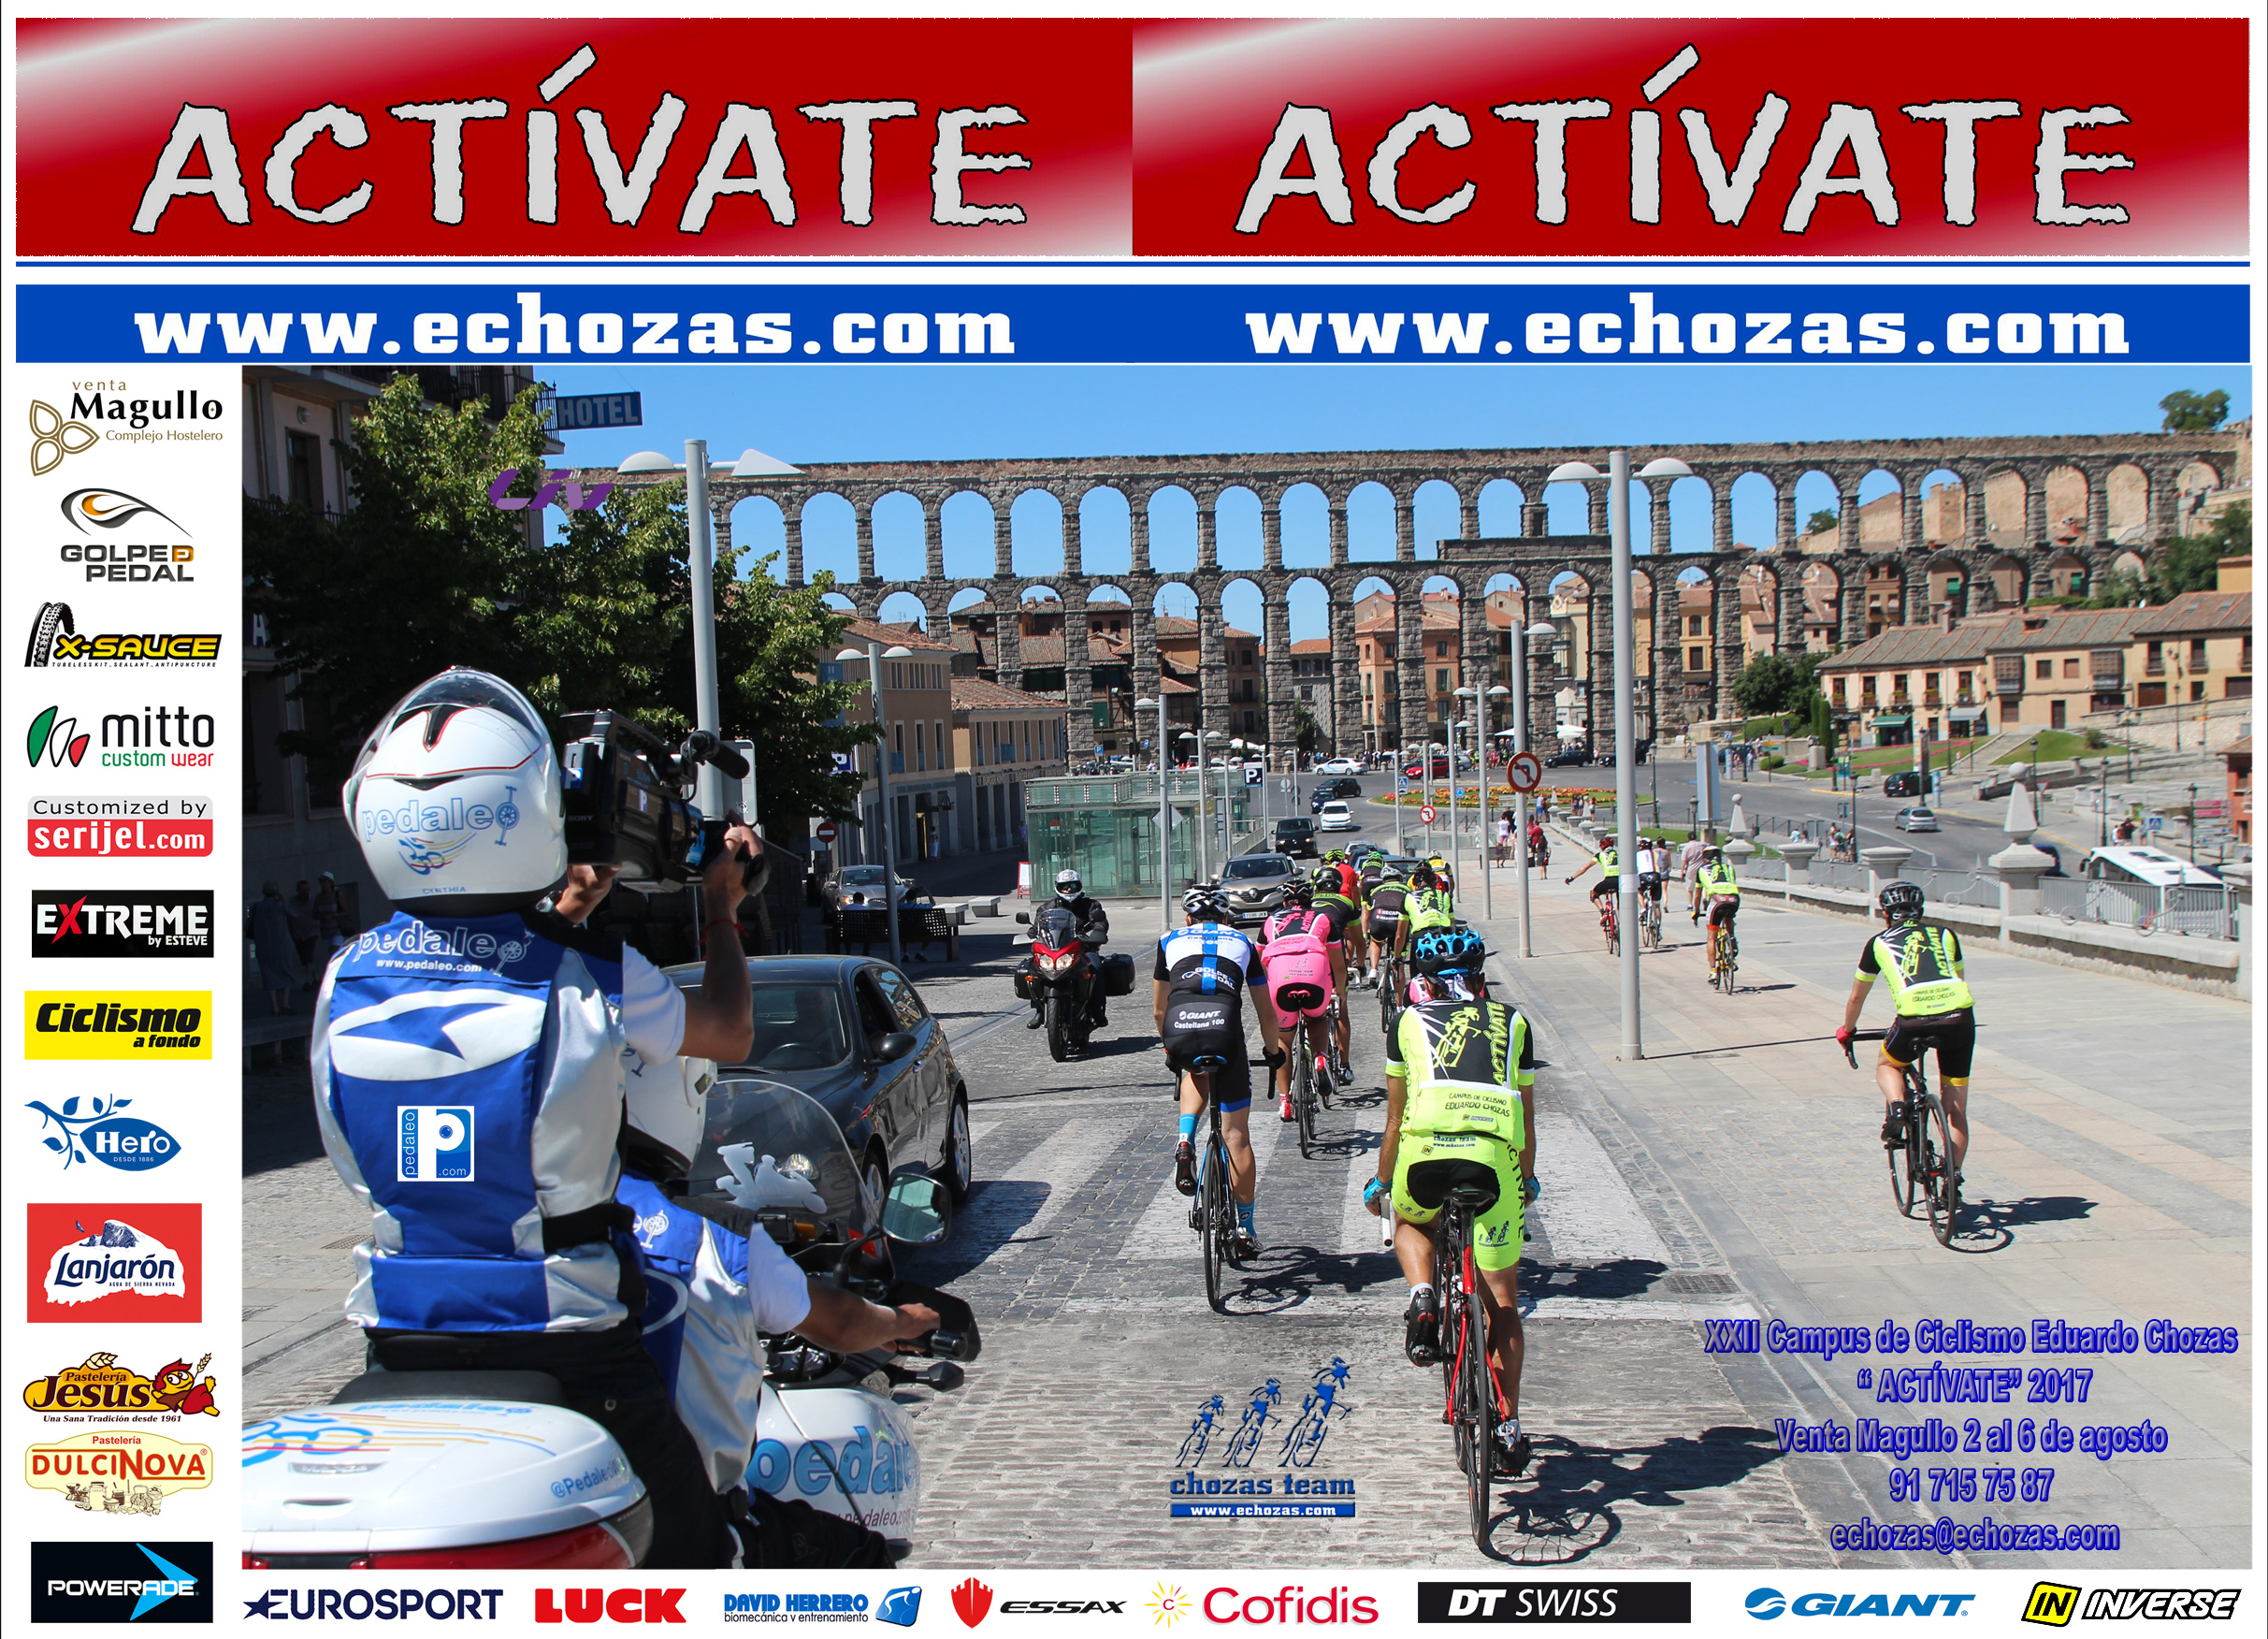 XXII Campus de Ciclismo Eduardo Chozas “Actívate” Venta Magullo 2017